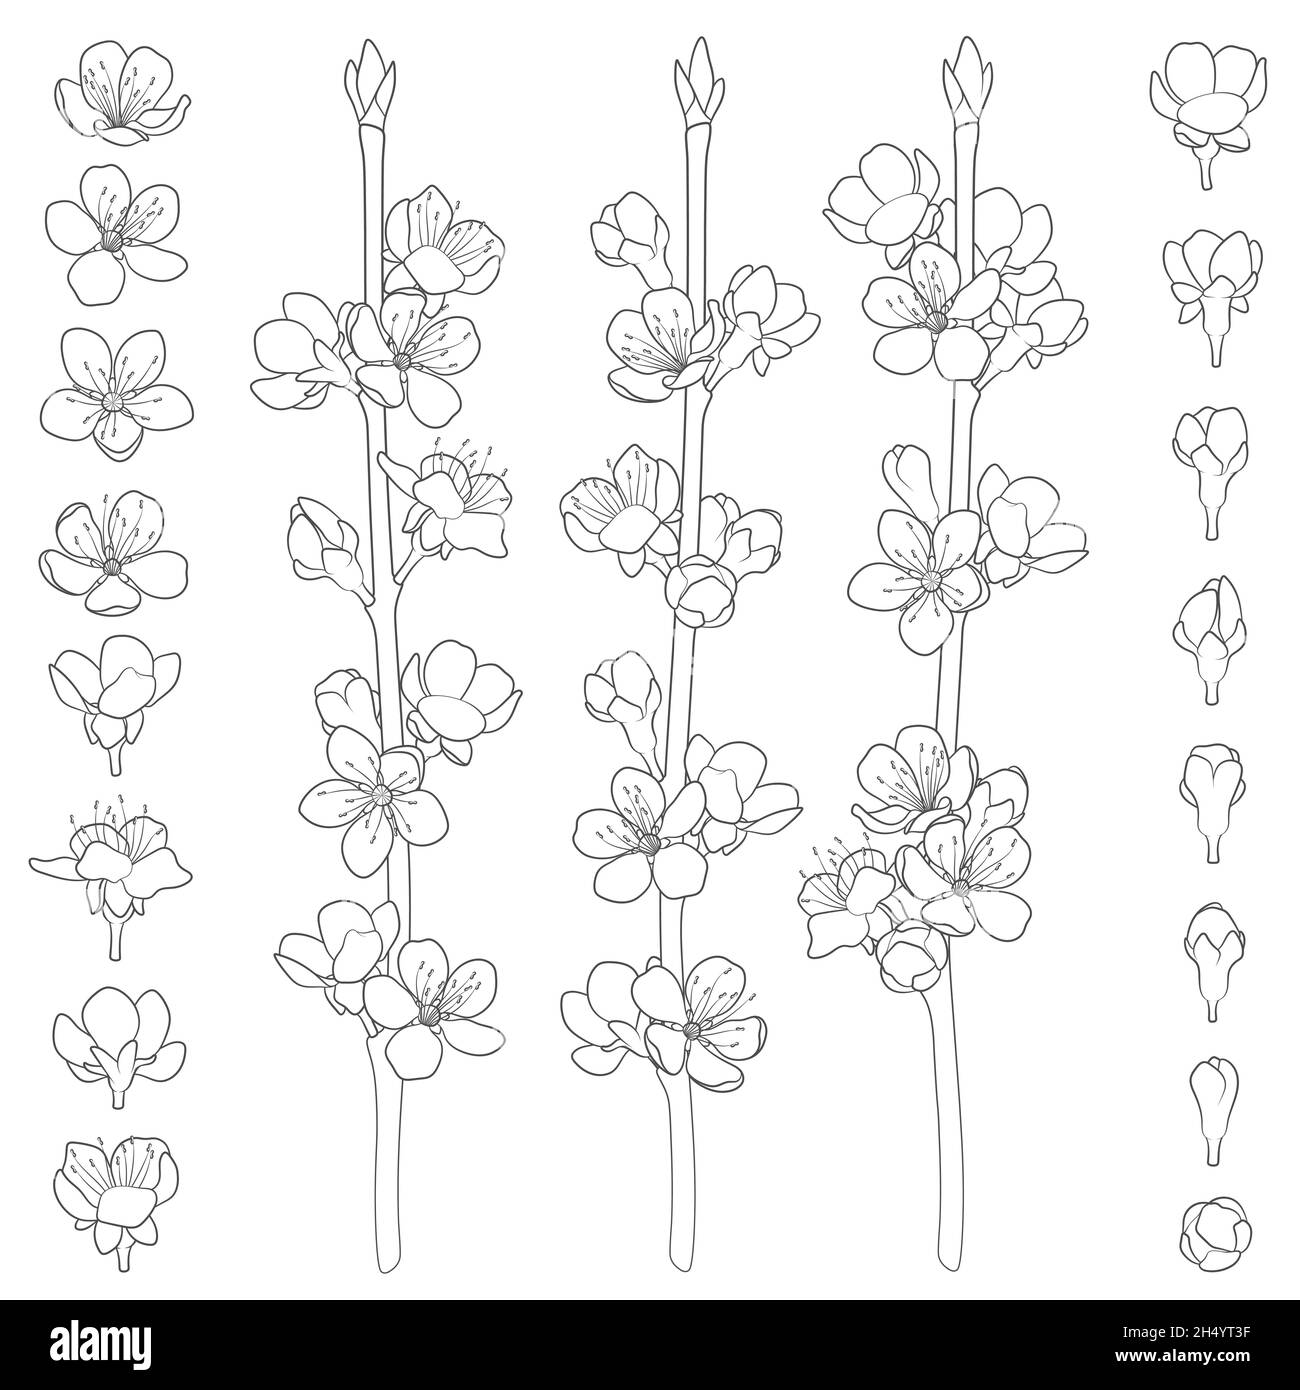 Ensemble d'images en noir et blanc avec branches de printemps en fleur.Objets vectoriels isolés sur fond blanc. Illustration de Vecteur